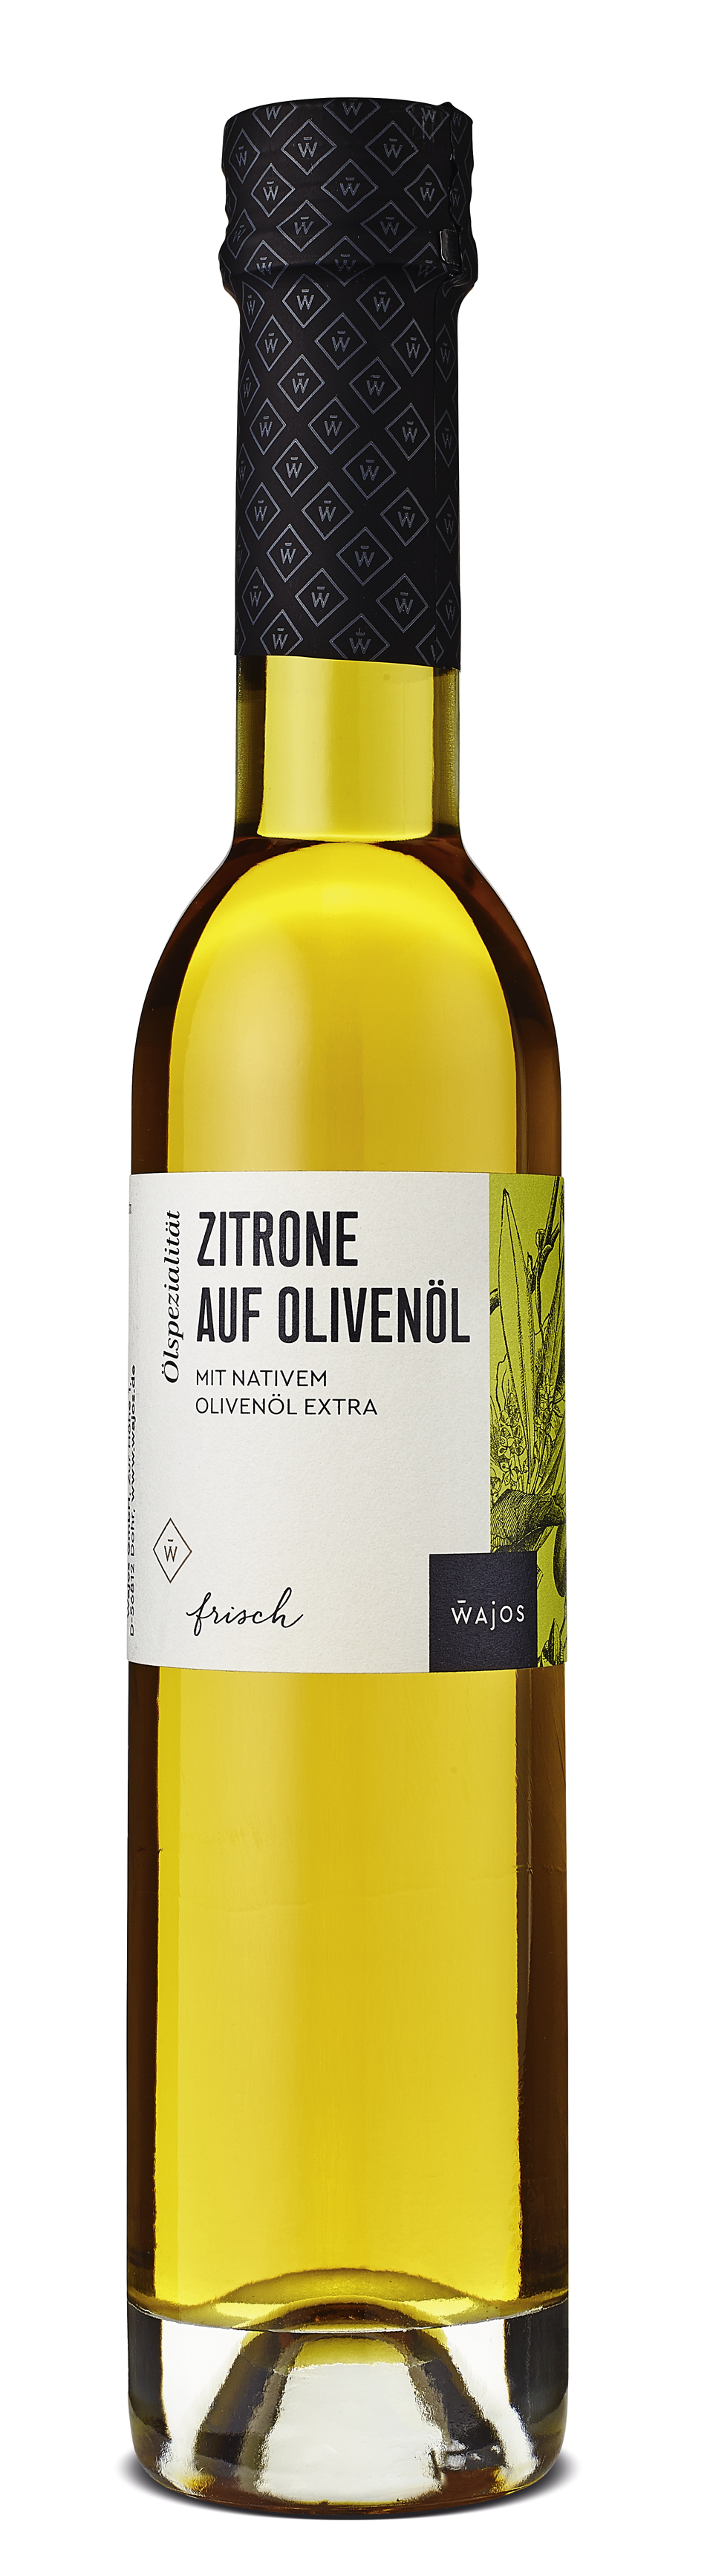 WAJOS - Zitrone auf Olivenöl 250ml - Olivenölzubereitung  